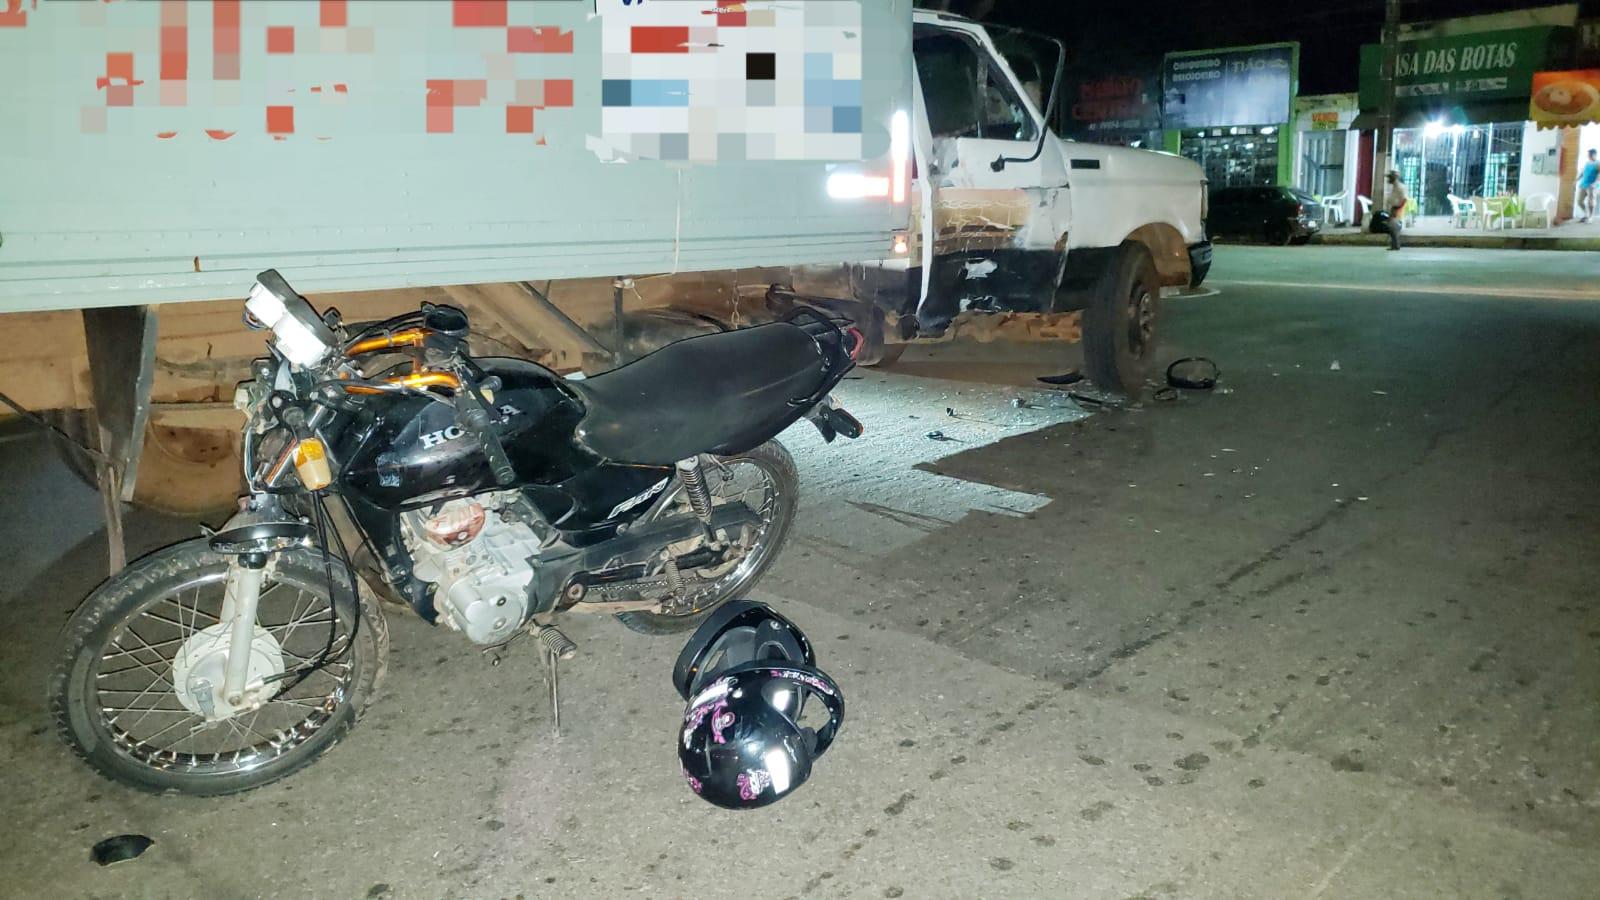 Motociclista fratura clavícula ao colidir com baú em trevo sem iluminação da BR-153 de Guaraí